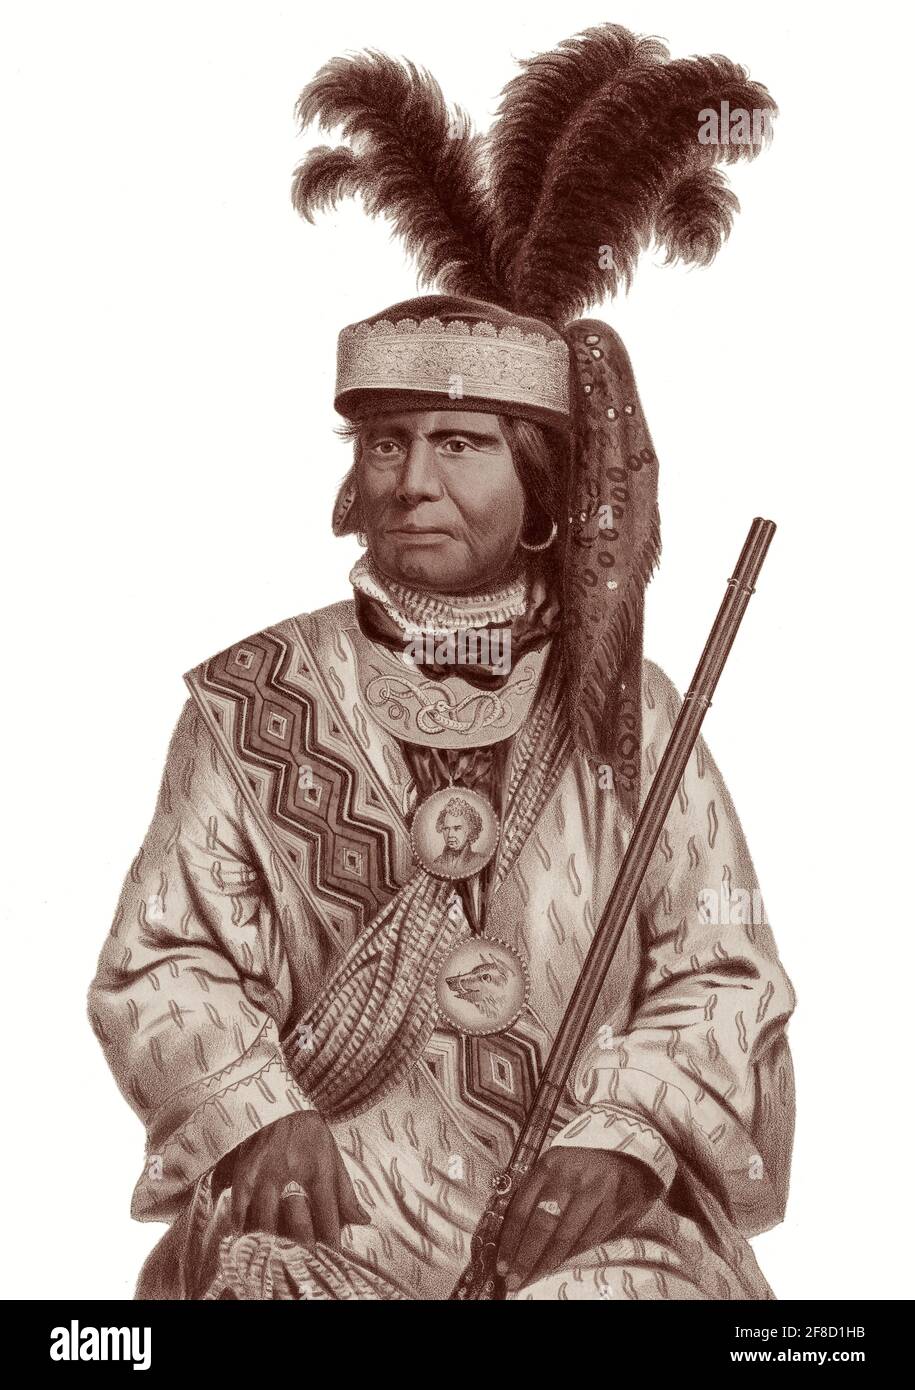 Billy Bowlegs (Holato Koniphatco Micco) (1810-c1859), auch bekannt als Billy Bolek, war während des Zweiten und Dritten Seminolenkrieges gegen die Vereinigten Staaten ein Anführer der Seminolen in Florida. Als einer der letzten Seminolenführer, der Widerstand leistte, zog er schließlich ins Indian Territory im heutigen Oklahoma. Stockfoto